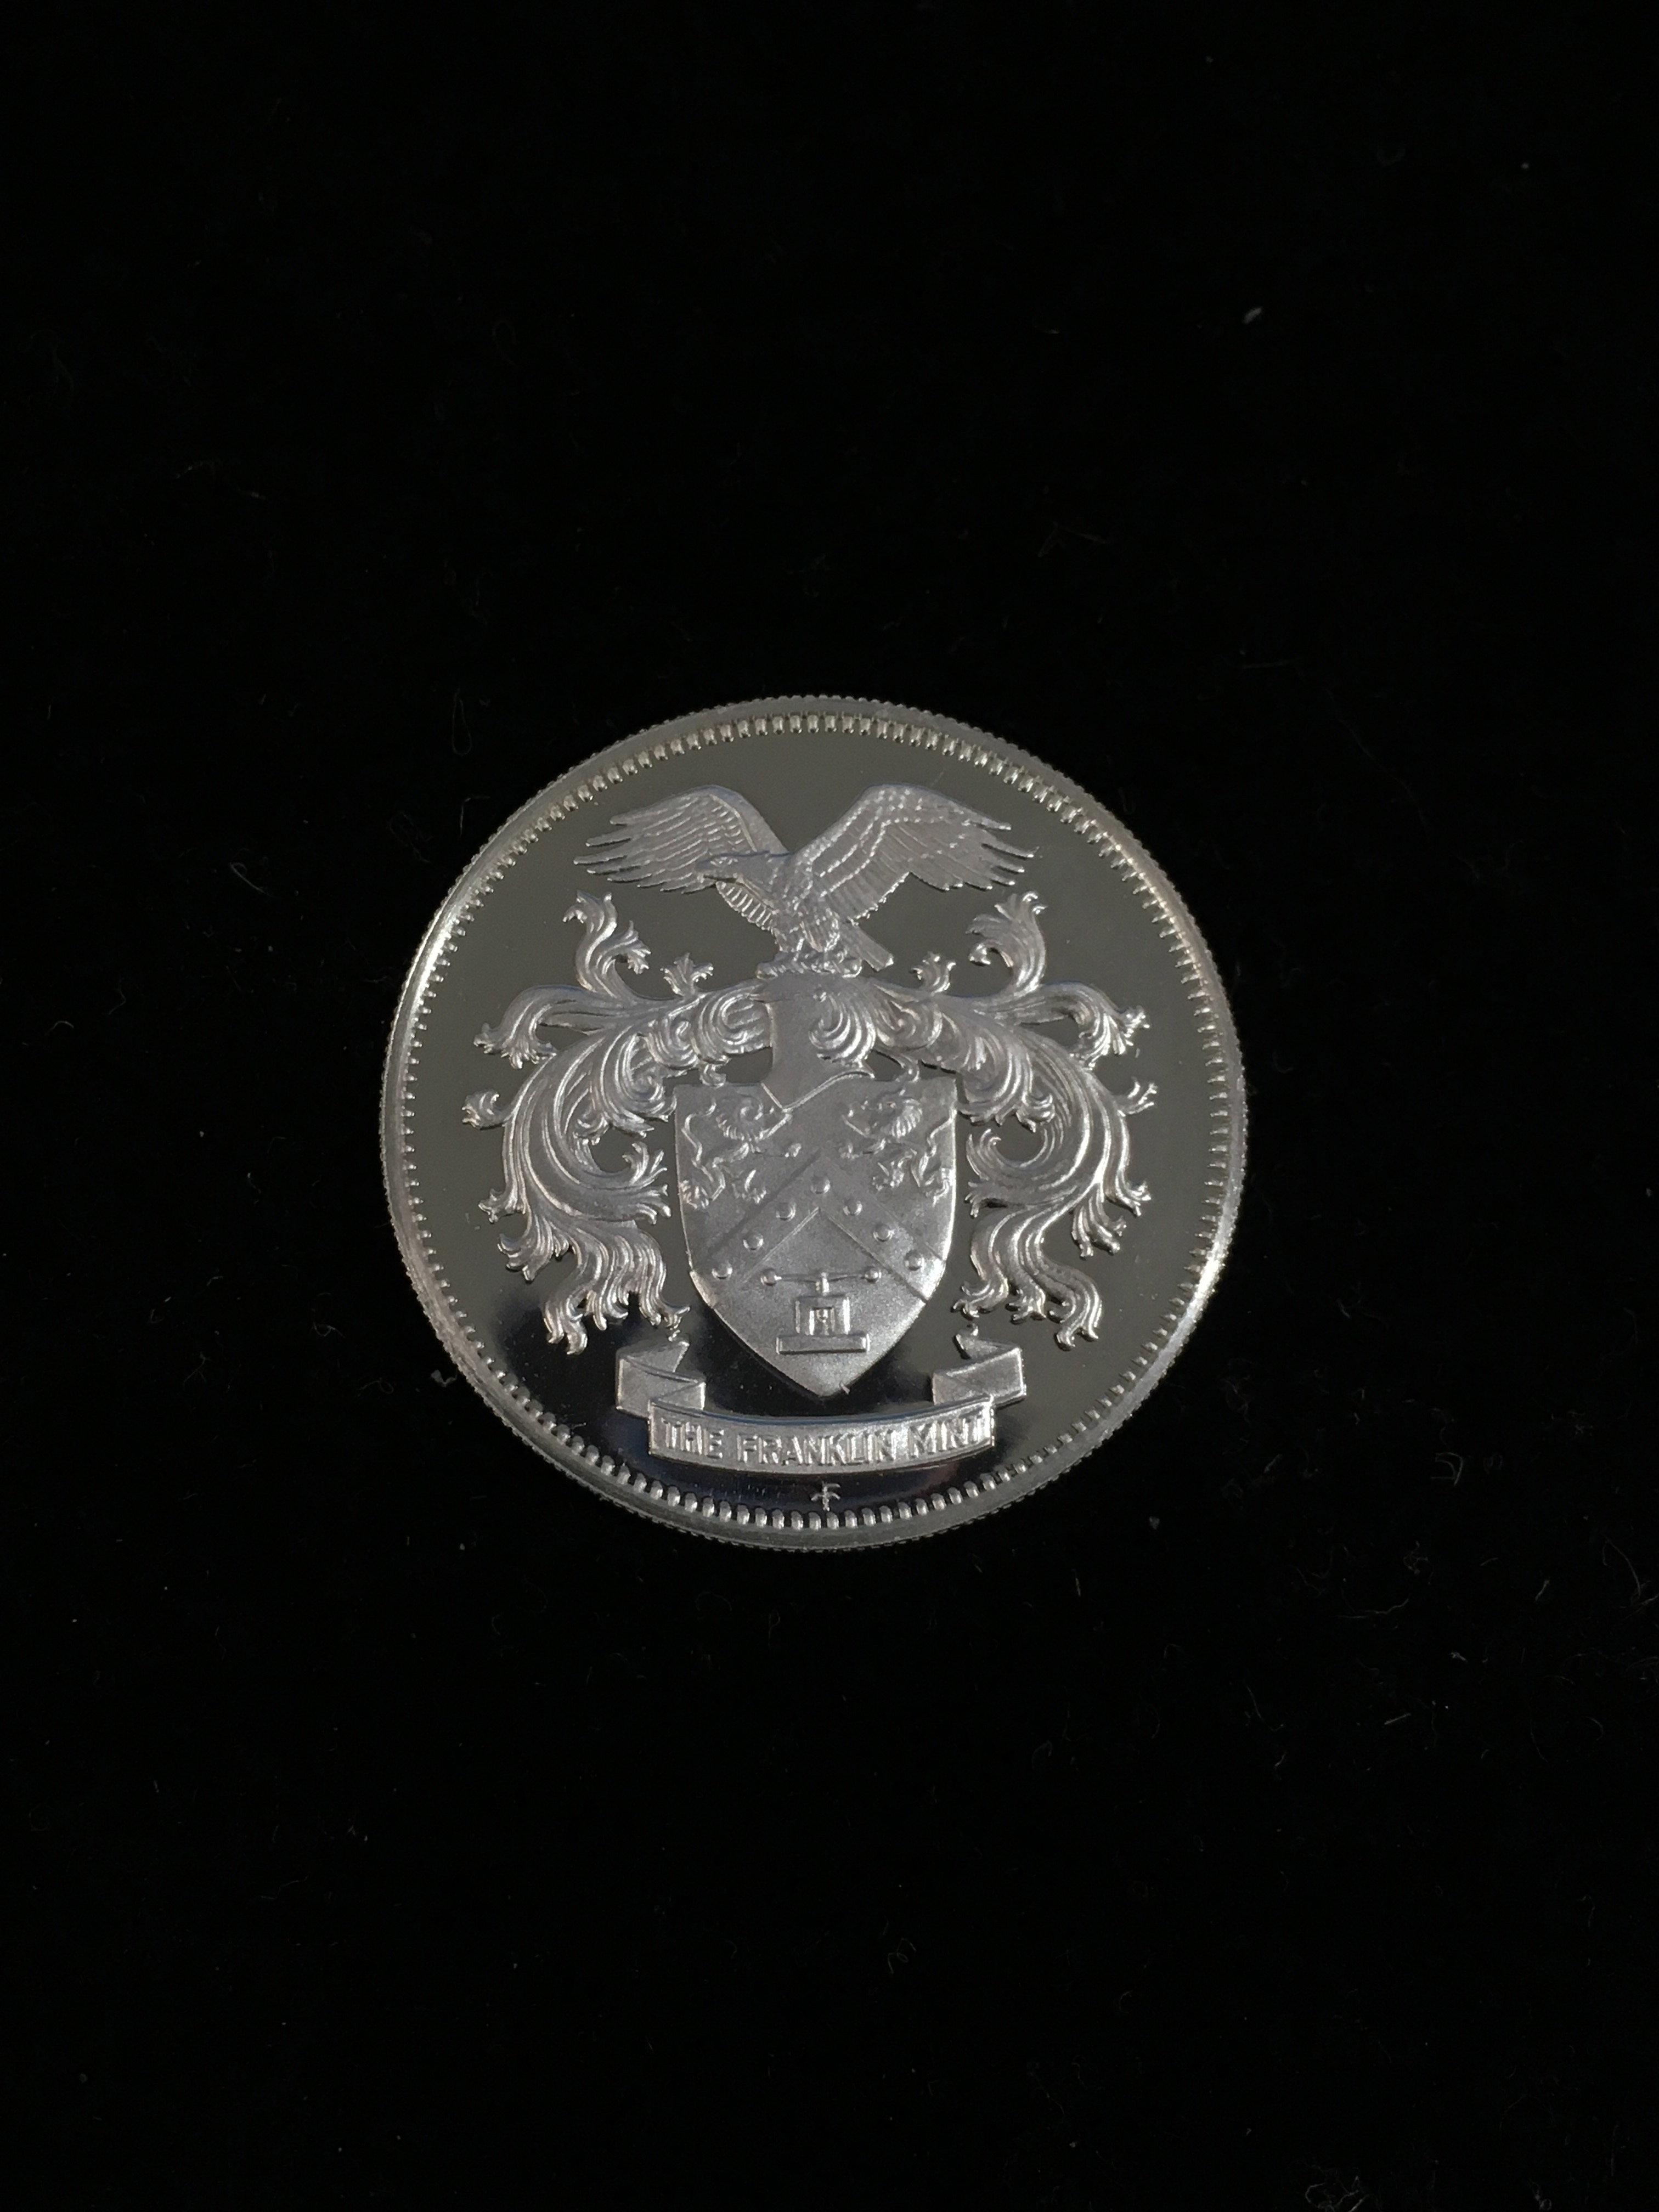 1976 Franklin Mint Member 7 Gram Sterling Silver Bullion Coin